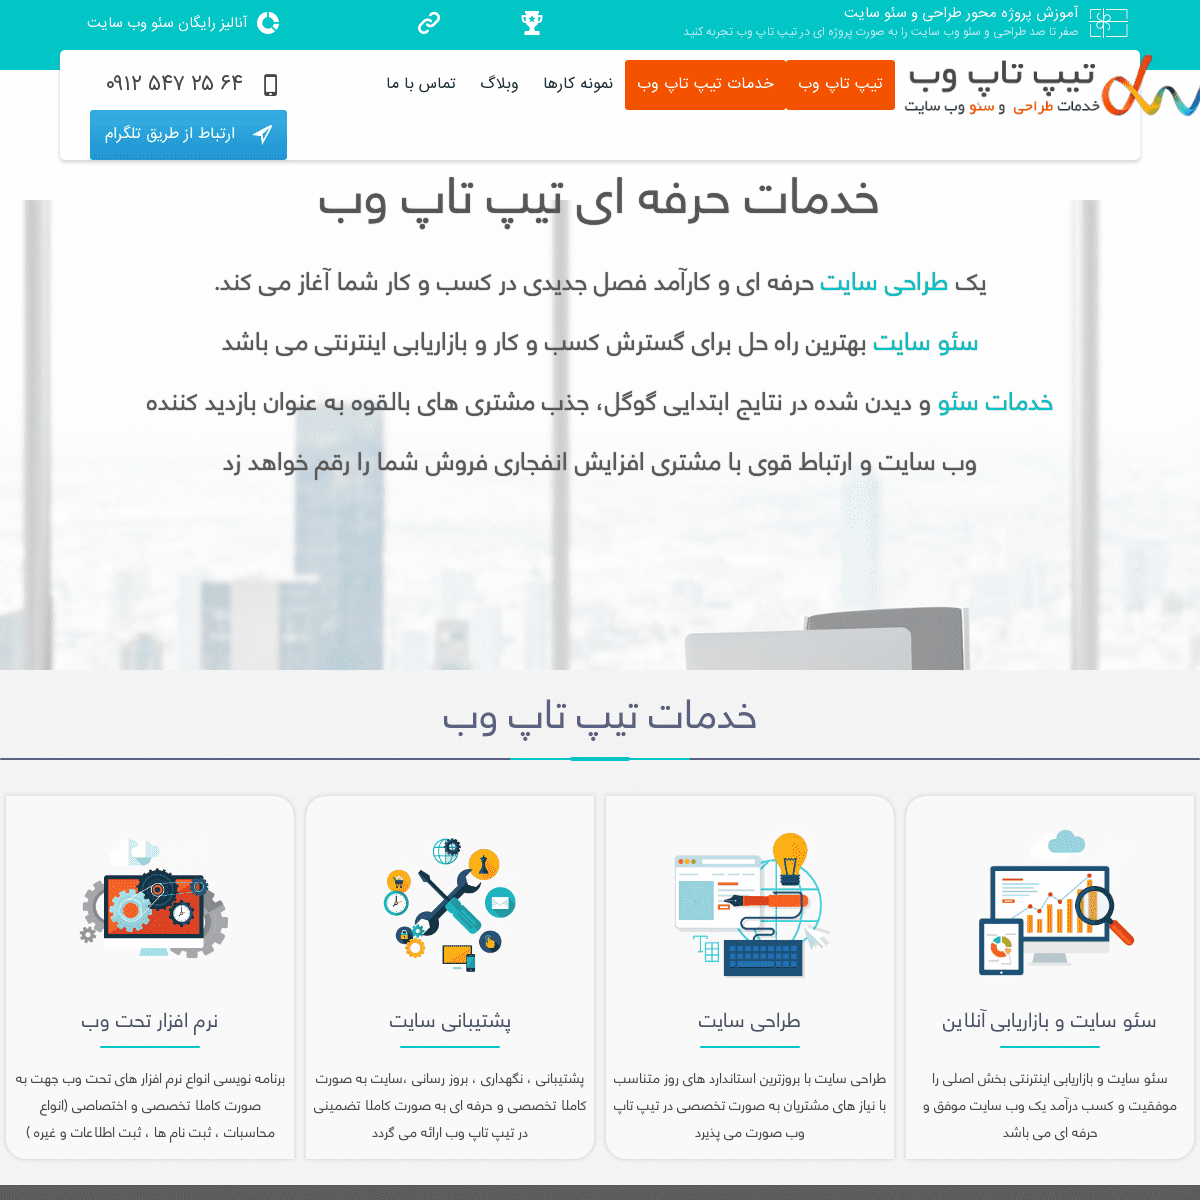 طراحی سایت حرفه ای تیپ تاپ وب | طراحی وب سایت | خدمات طراحی سایت در تهران